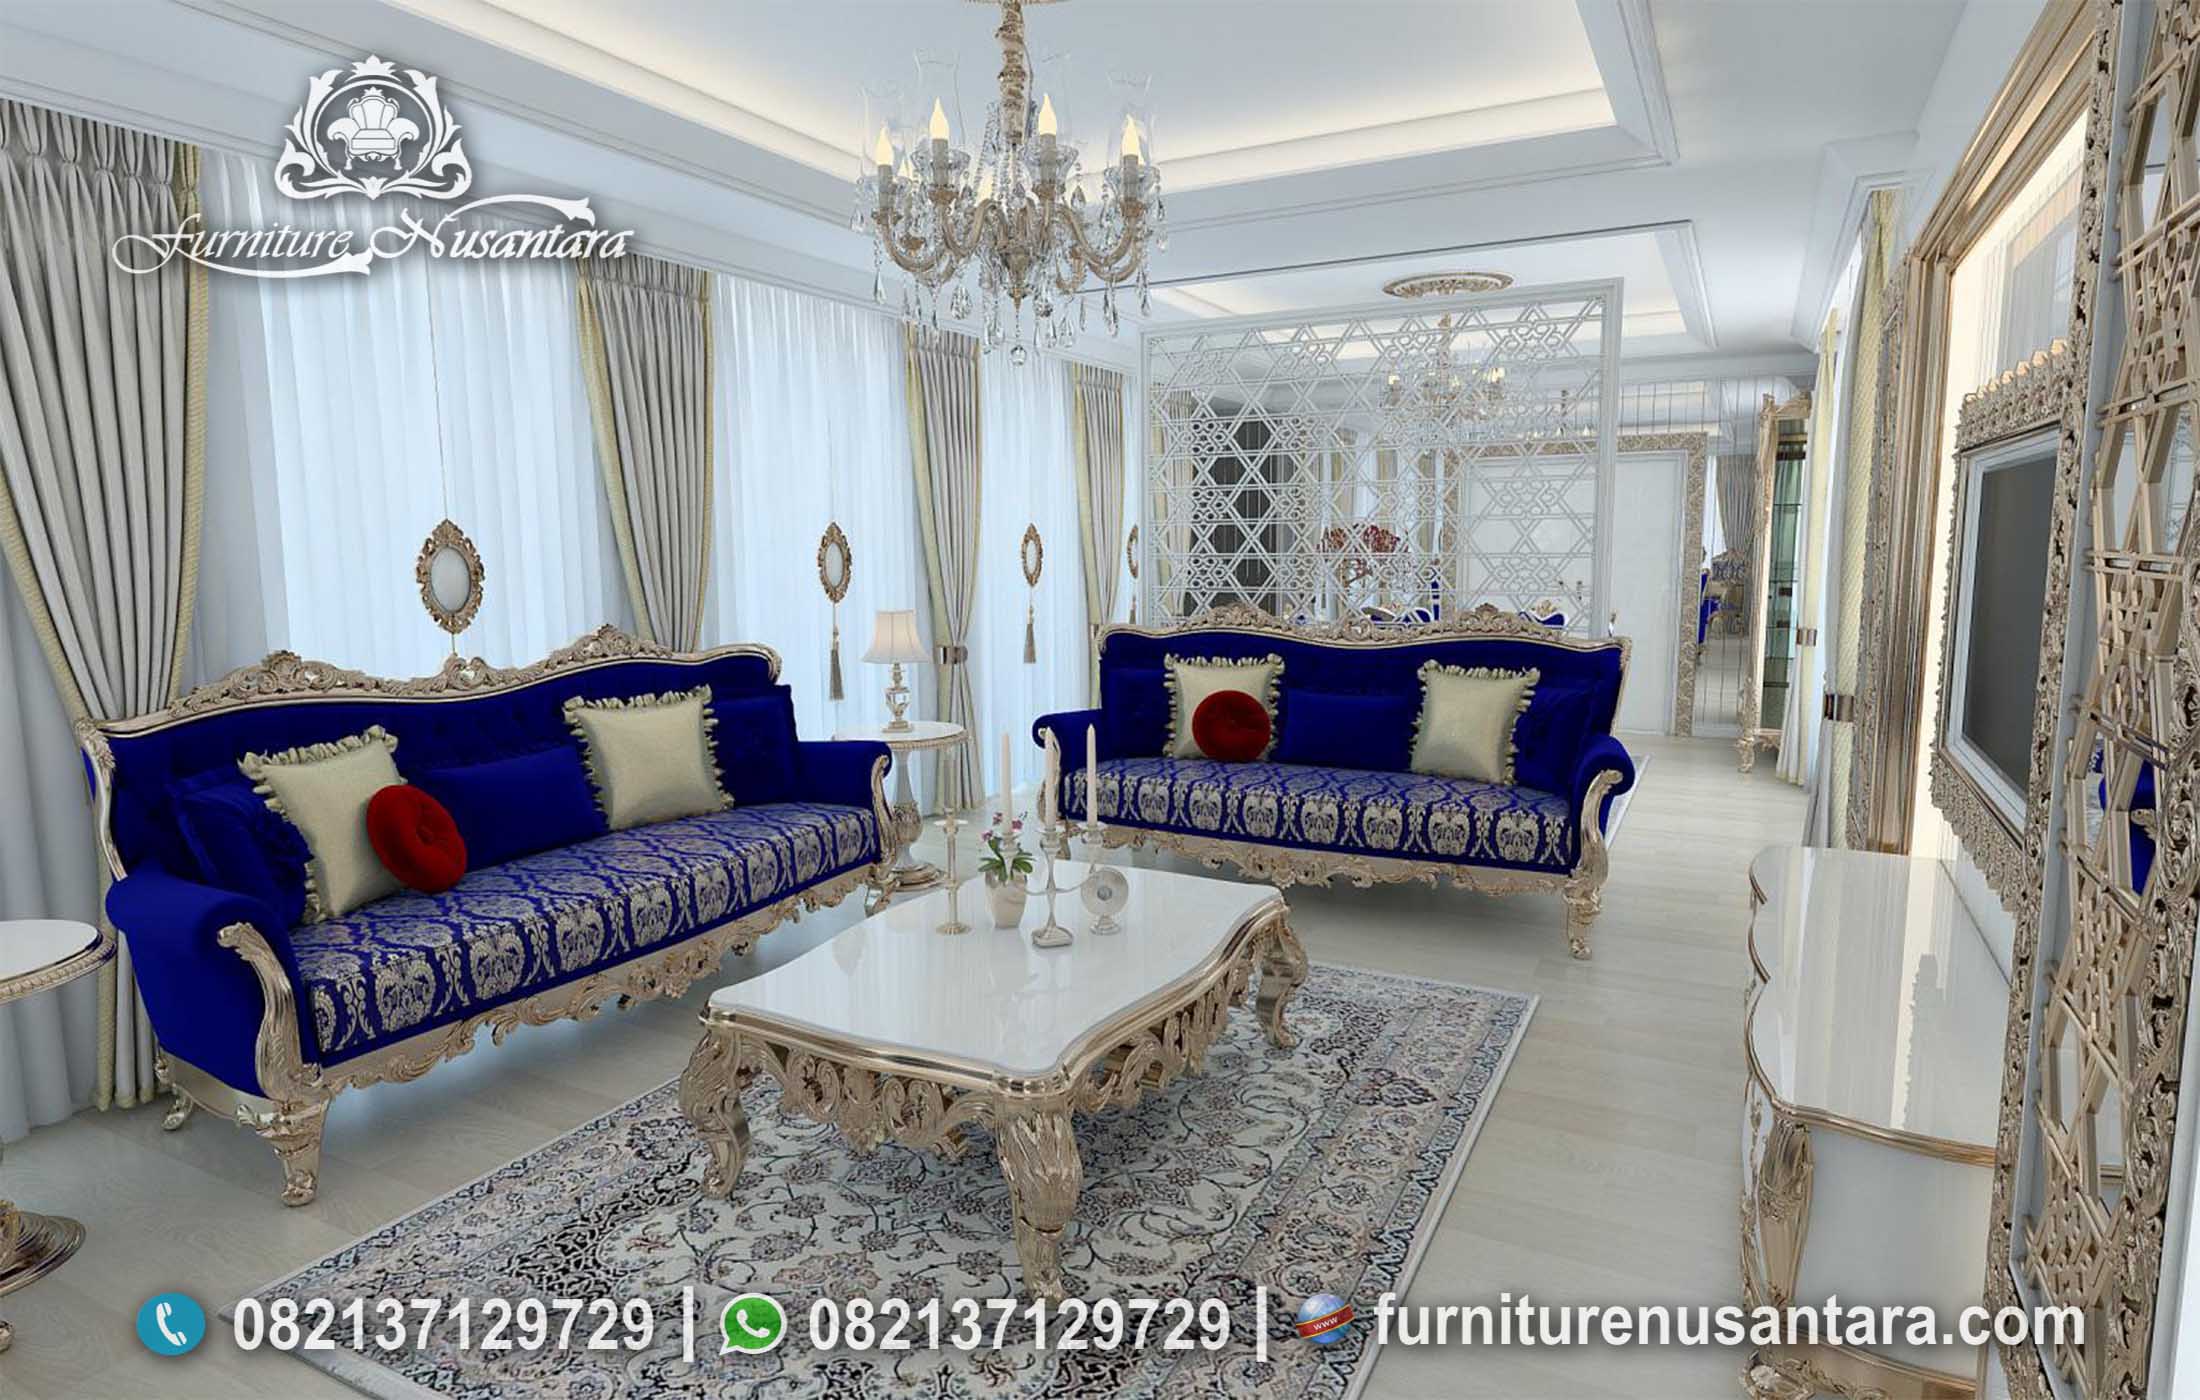 Sofa Ruang Tamu Mewah ST-01, Furniture Nusantara